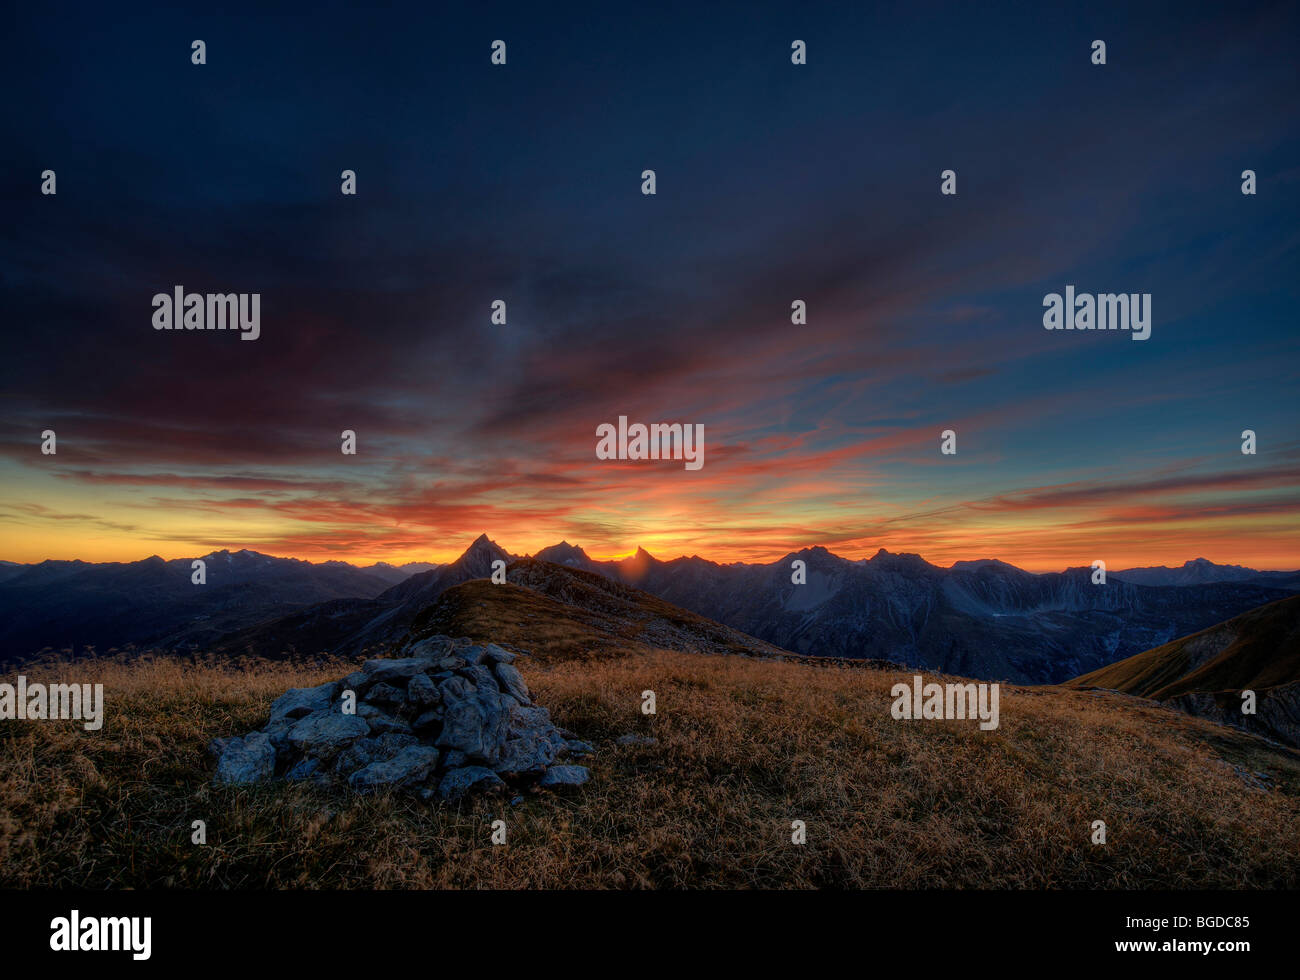 Nuageux humeur avec des pics de montagne, kaisers, Ausserfern, Lechtal, Tyrol, Autriche, Europe Banque D'Images